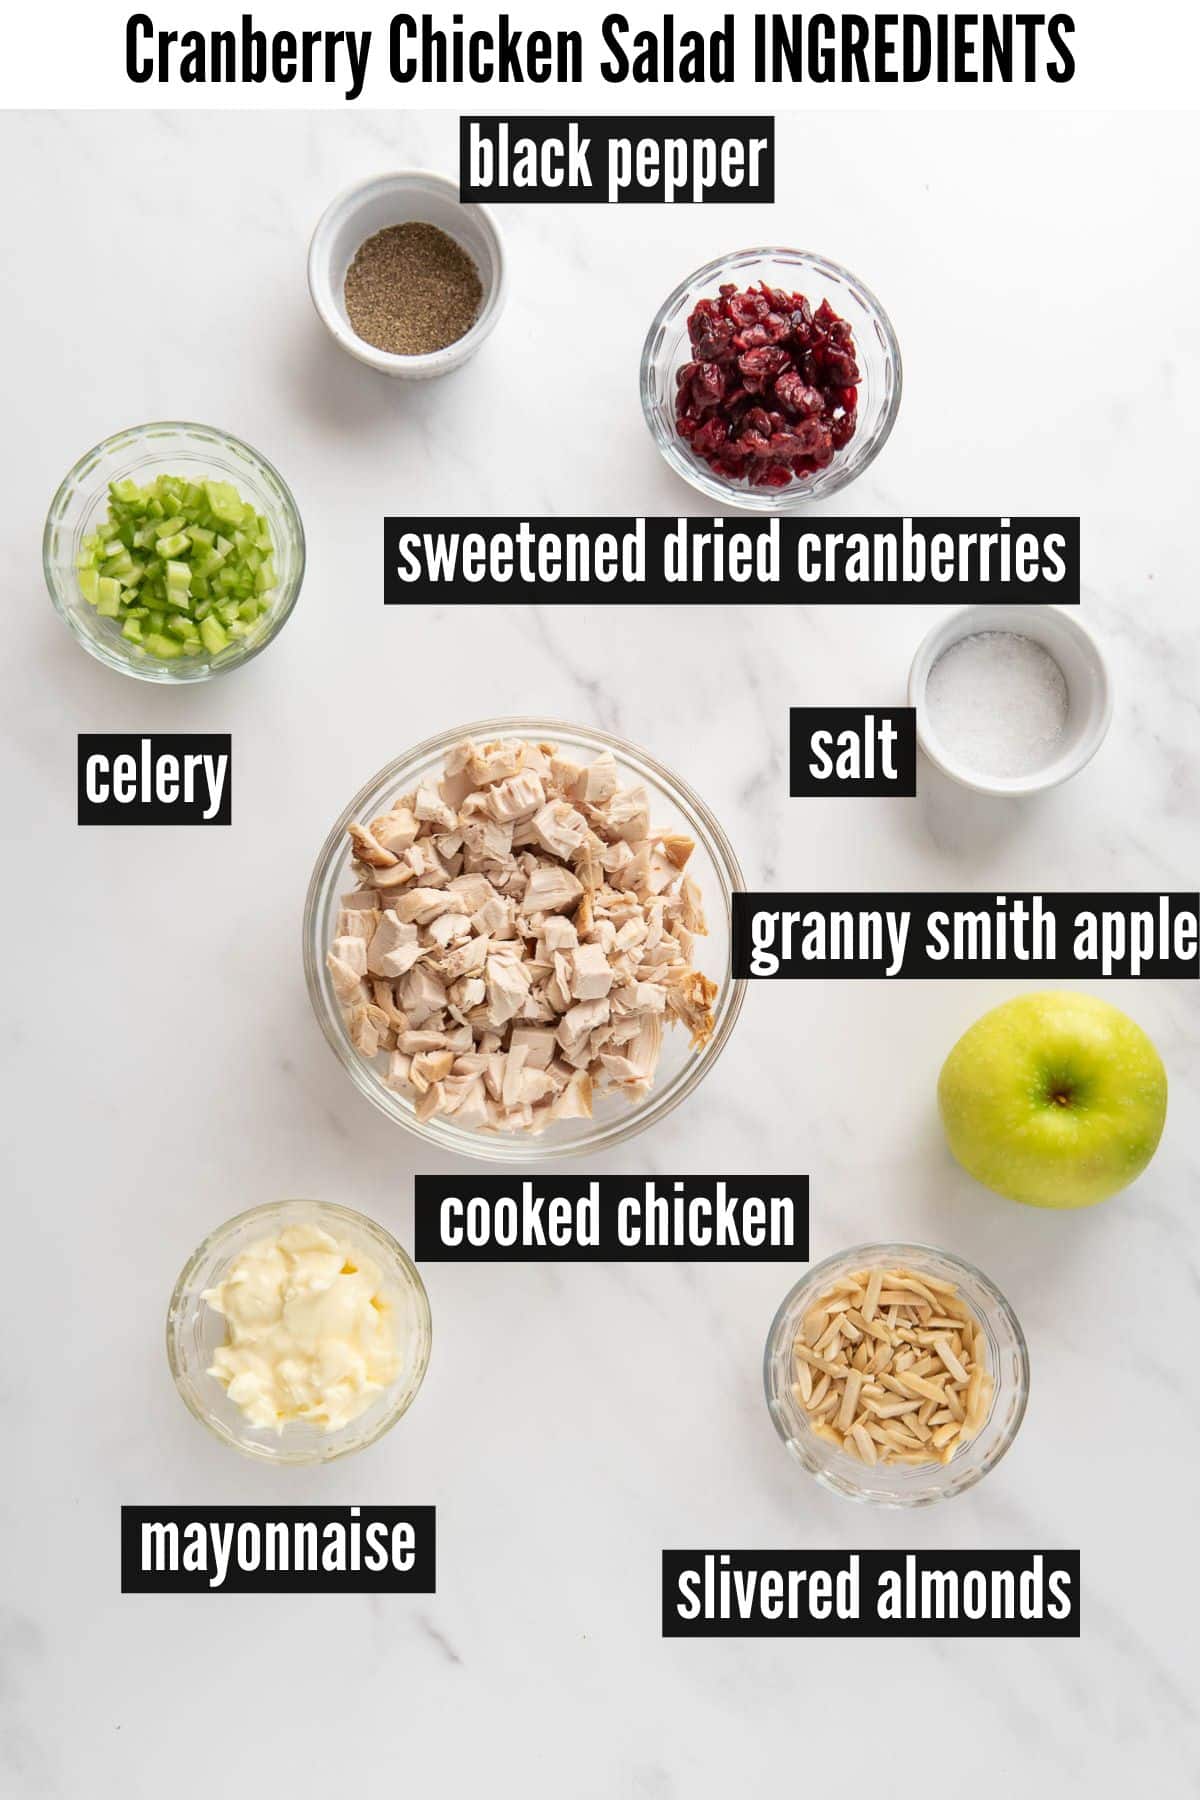 cranberry chicken salad labelled ingredients.